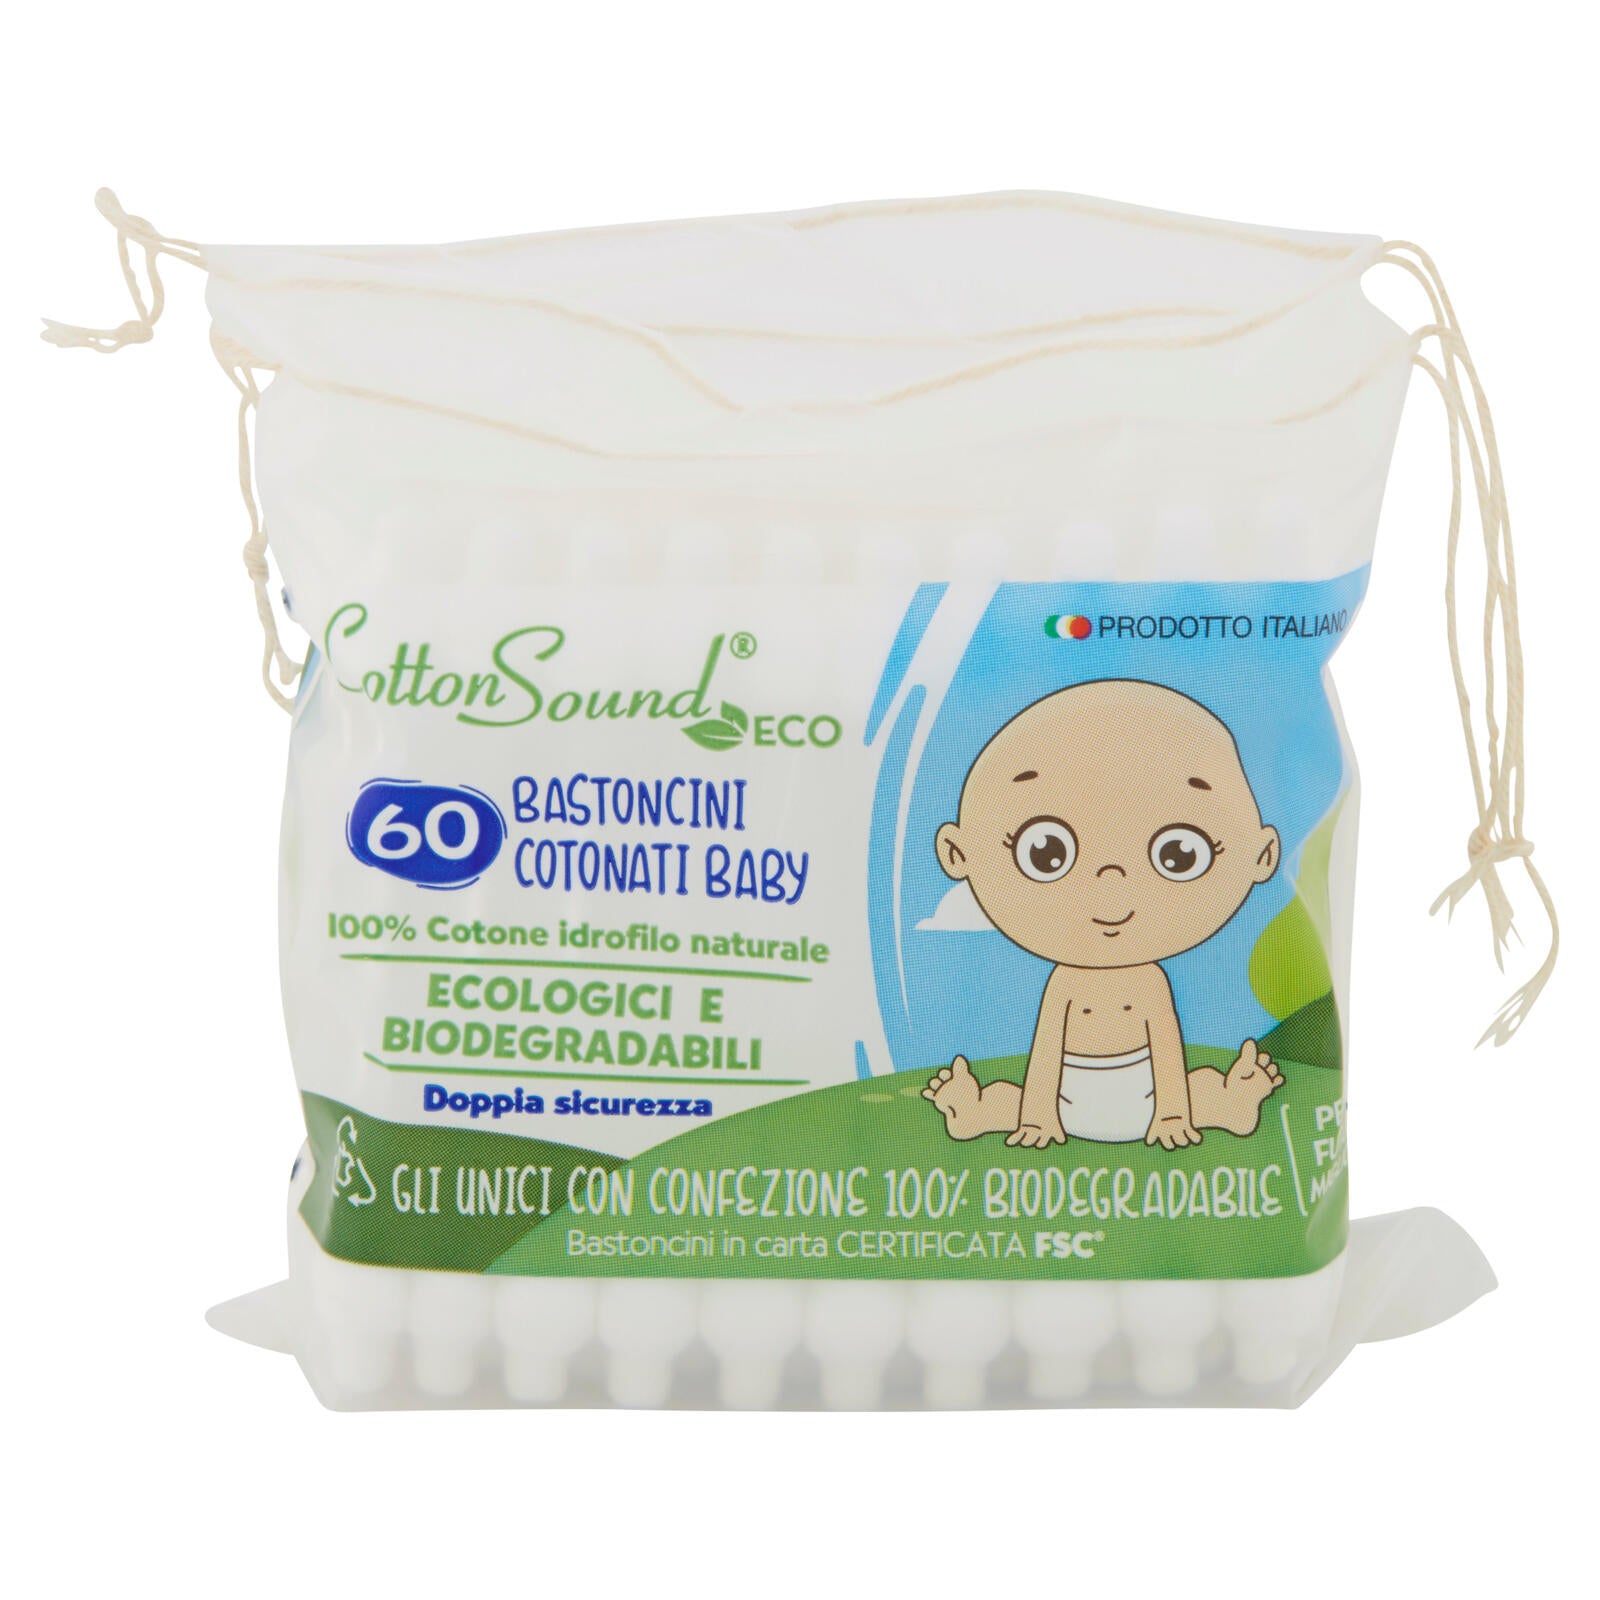 Cotton Sound Eco Bastoncini Cotonati Baby 60 pz